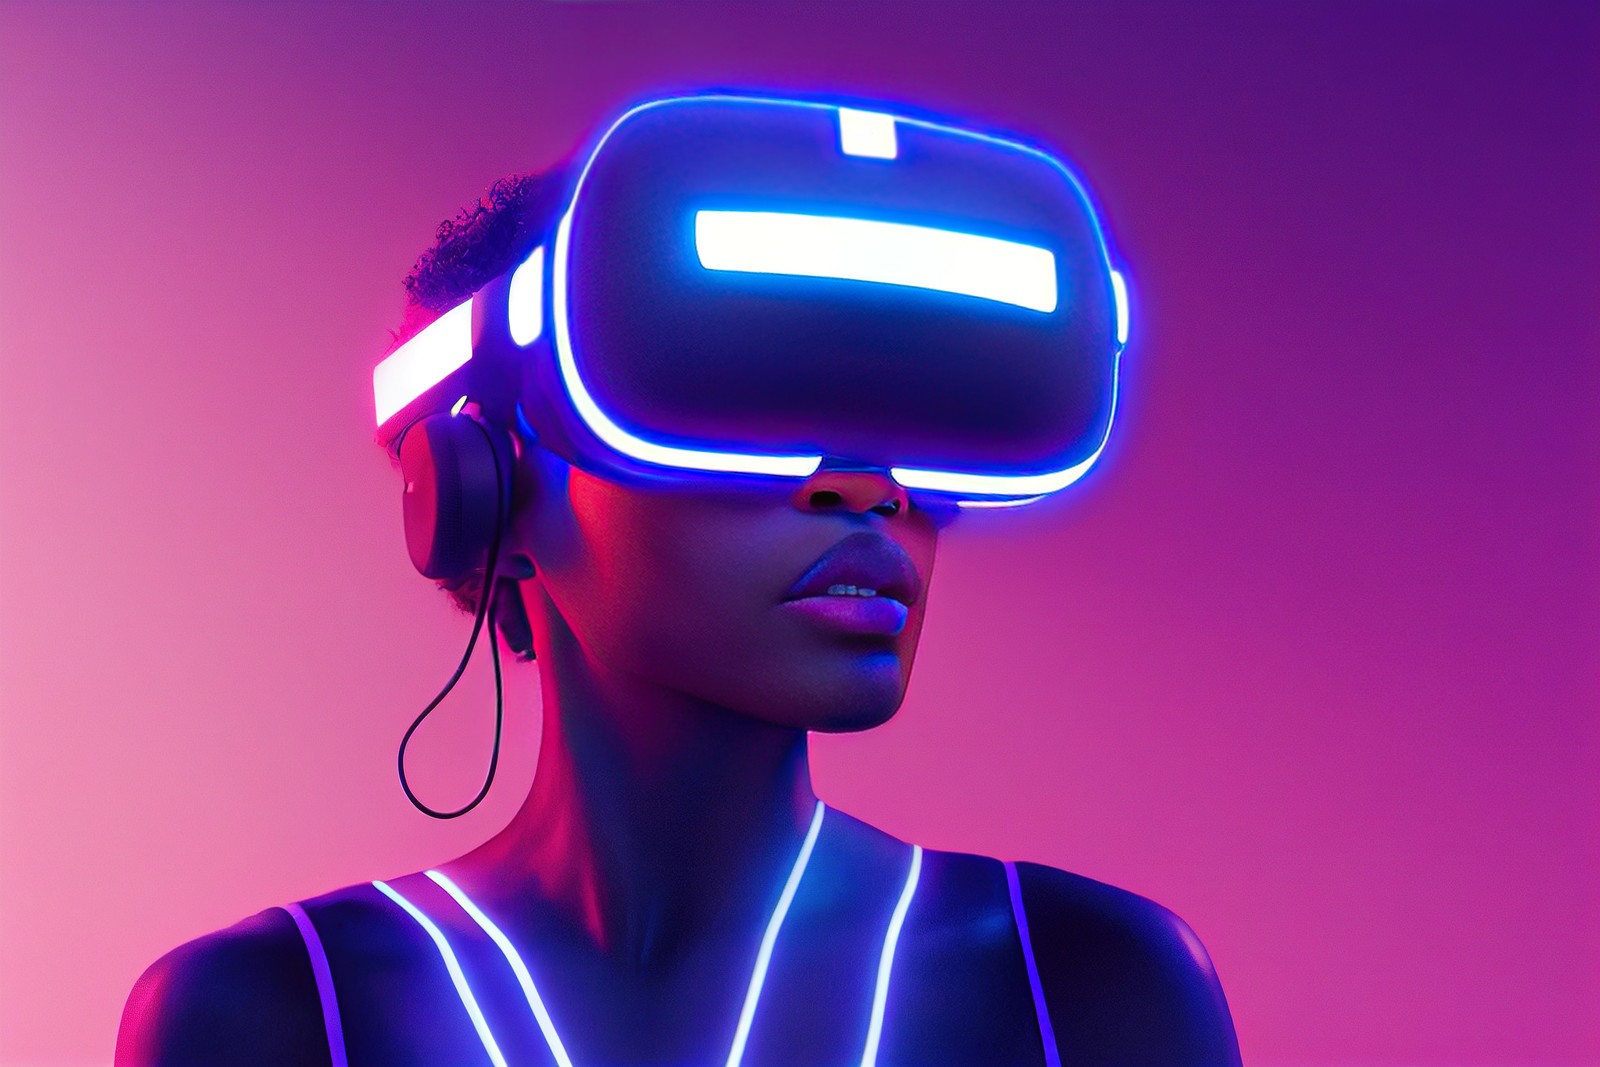 图片展示了一位女性戴着虚拟现实头盔和耳机，身处于紫色调的灯光下，呈现出科技感和未来主义风格。